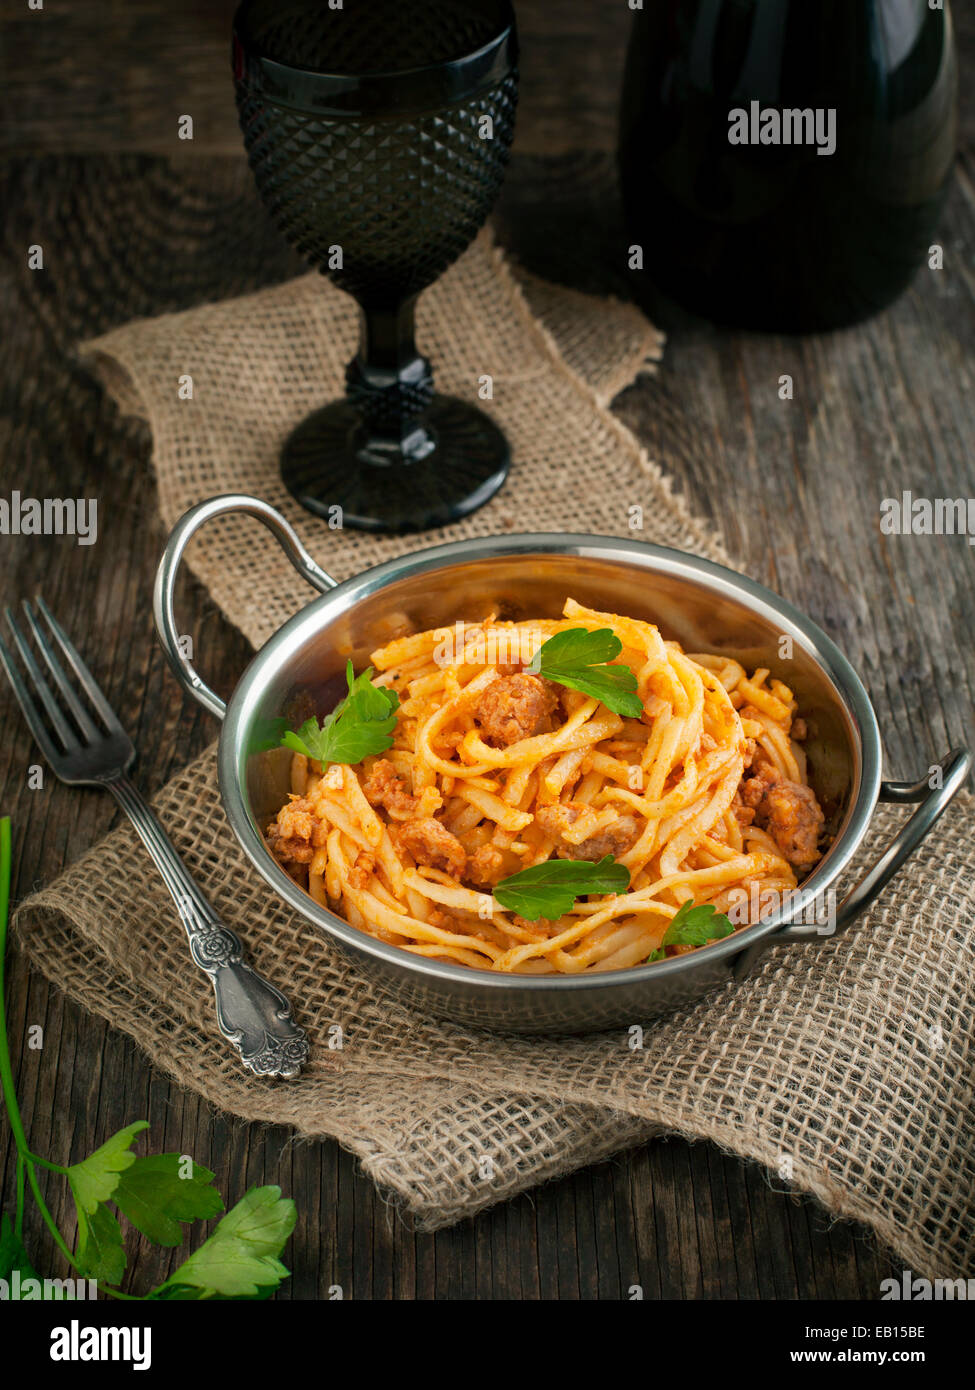 Linguine con carne di salsa di pomodoro. La pasta italiana con ragù di carne. Foto Stock